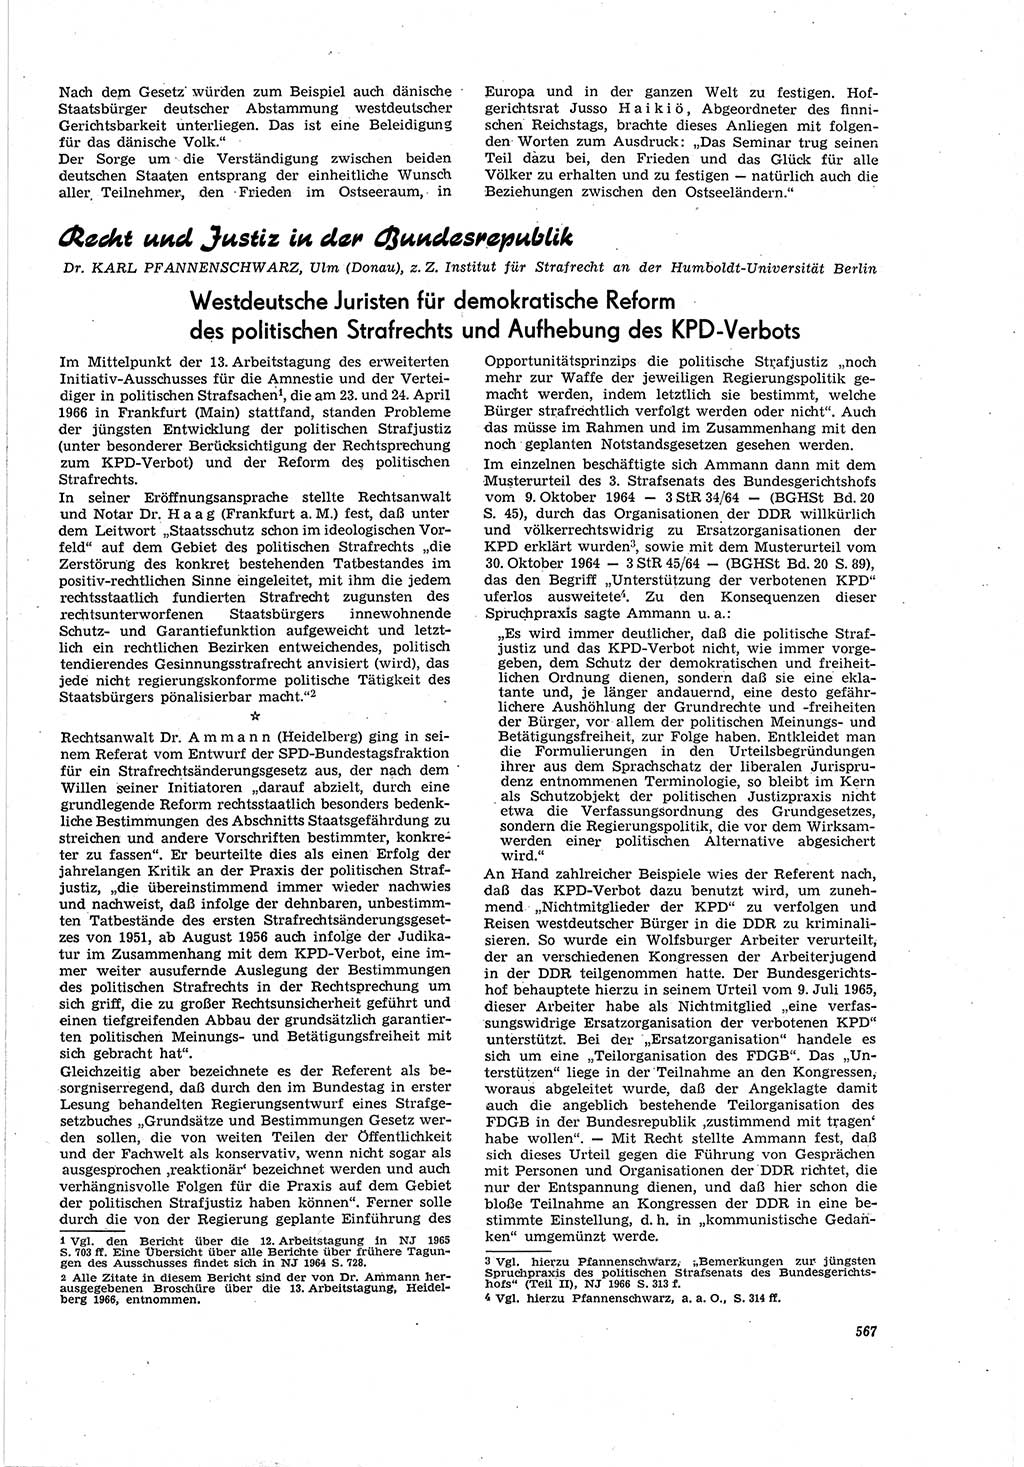 Neue Justiz (NJ), Zeitschrift für Recht und Rechtswissenschaft [Deutsche Demokratische Republik (DDR)], 20. Jahrgang 1966, Seite 567 (NJ DDR 1966, S. 567)